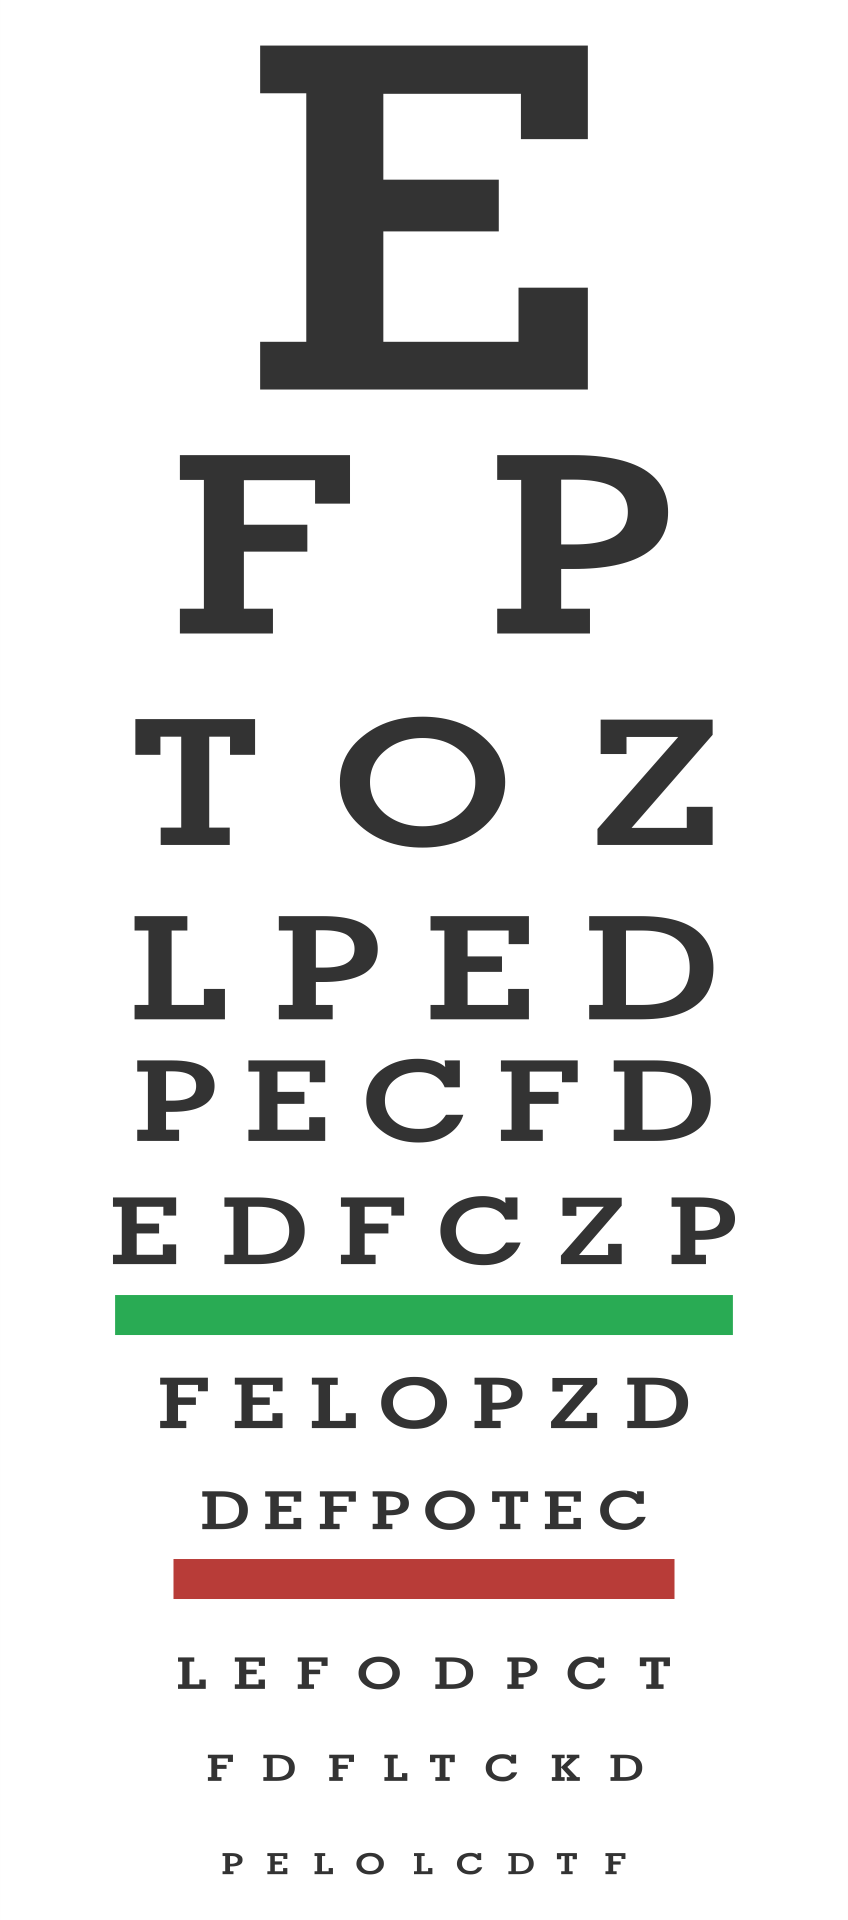 Printable Eye Sight Test